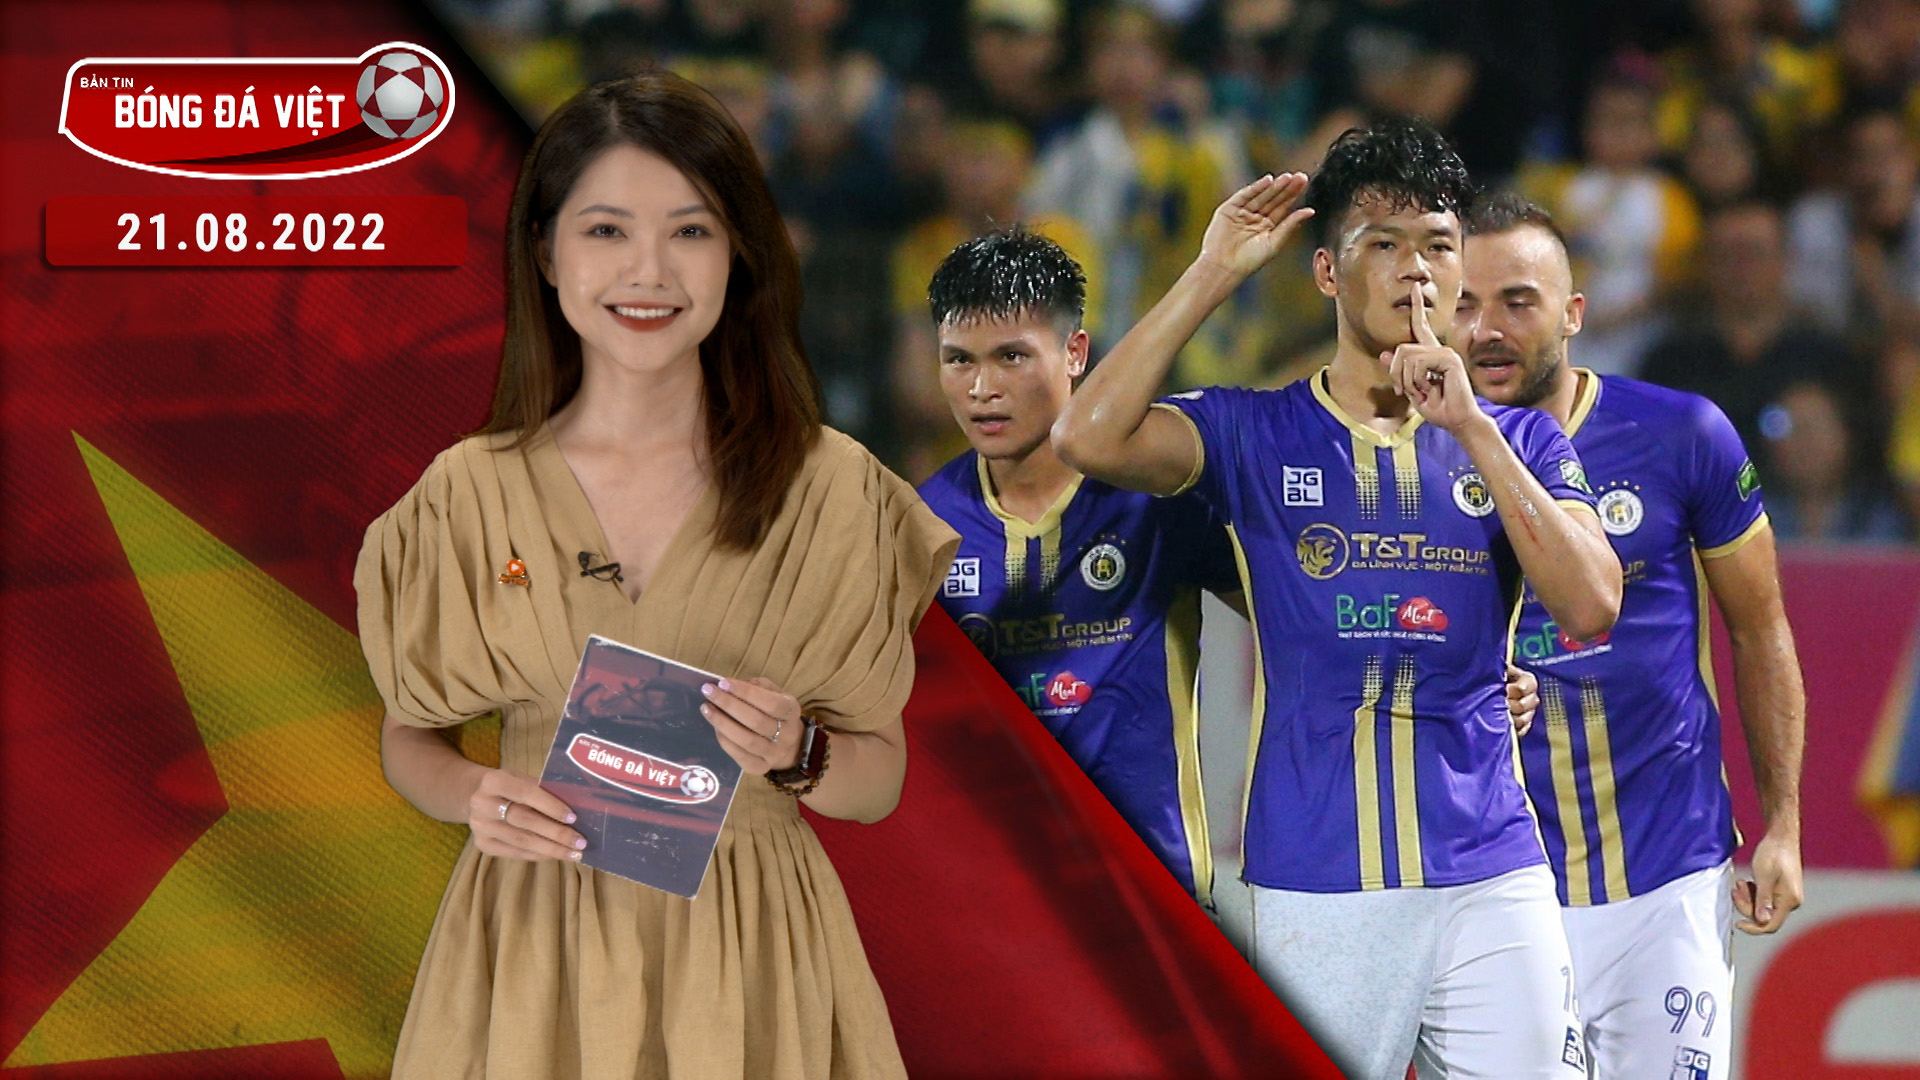 Hà Nội FC độc chiếm đỉnh bảng V-League - Bản tin Bóng đá Việt 21/08